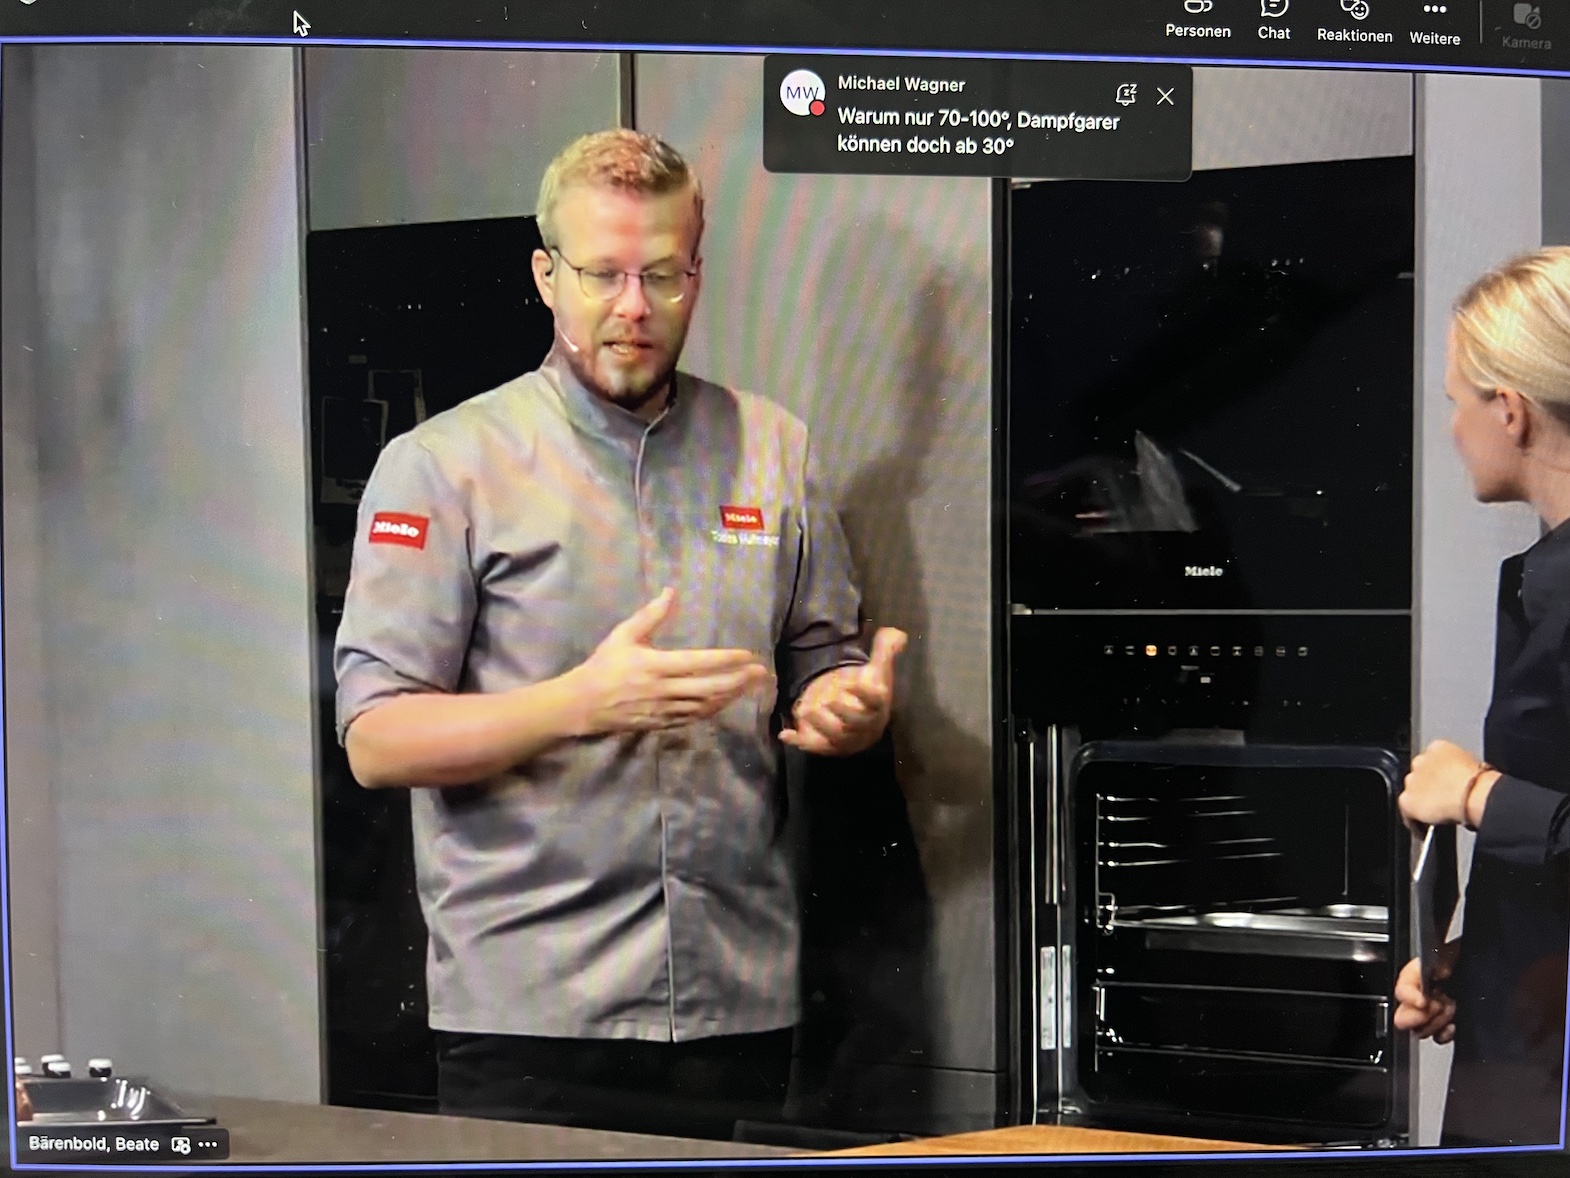 Video zur Produktschulung: Ein Mann in einem Kochhemd steht vor einem Backofen und erklärt dessen Funktion